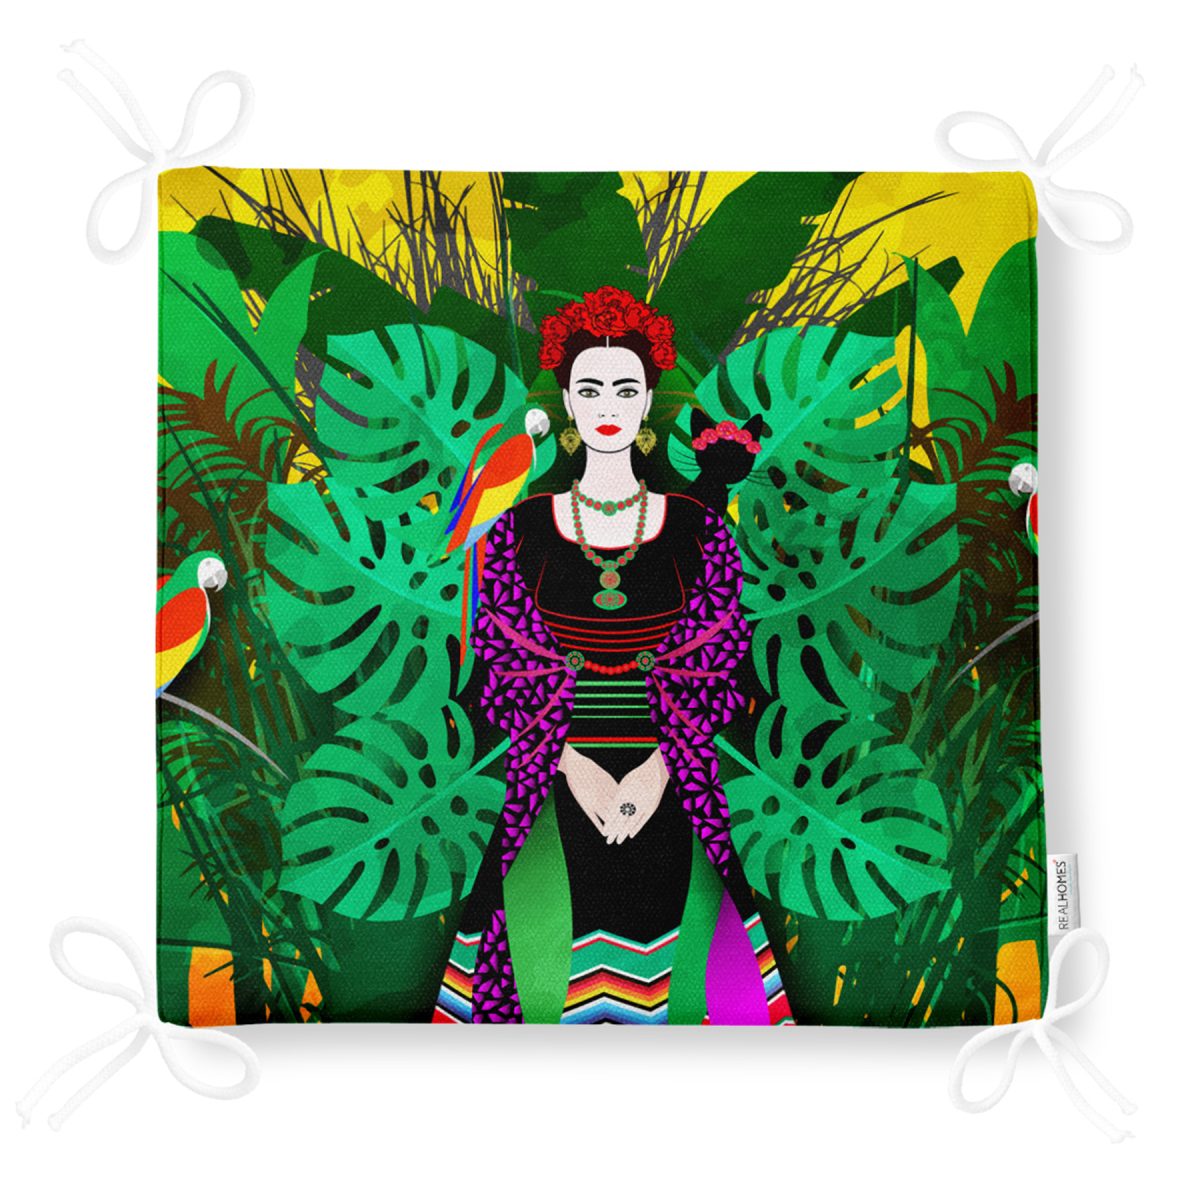 Tropik Yapraklar İçerisinde Frida Motifli Dijital Baskılı Fermuarlı Sandalye Minderi Realhomes